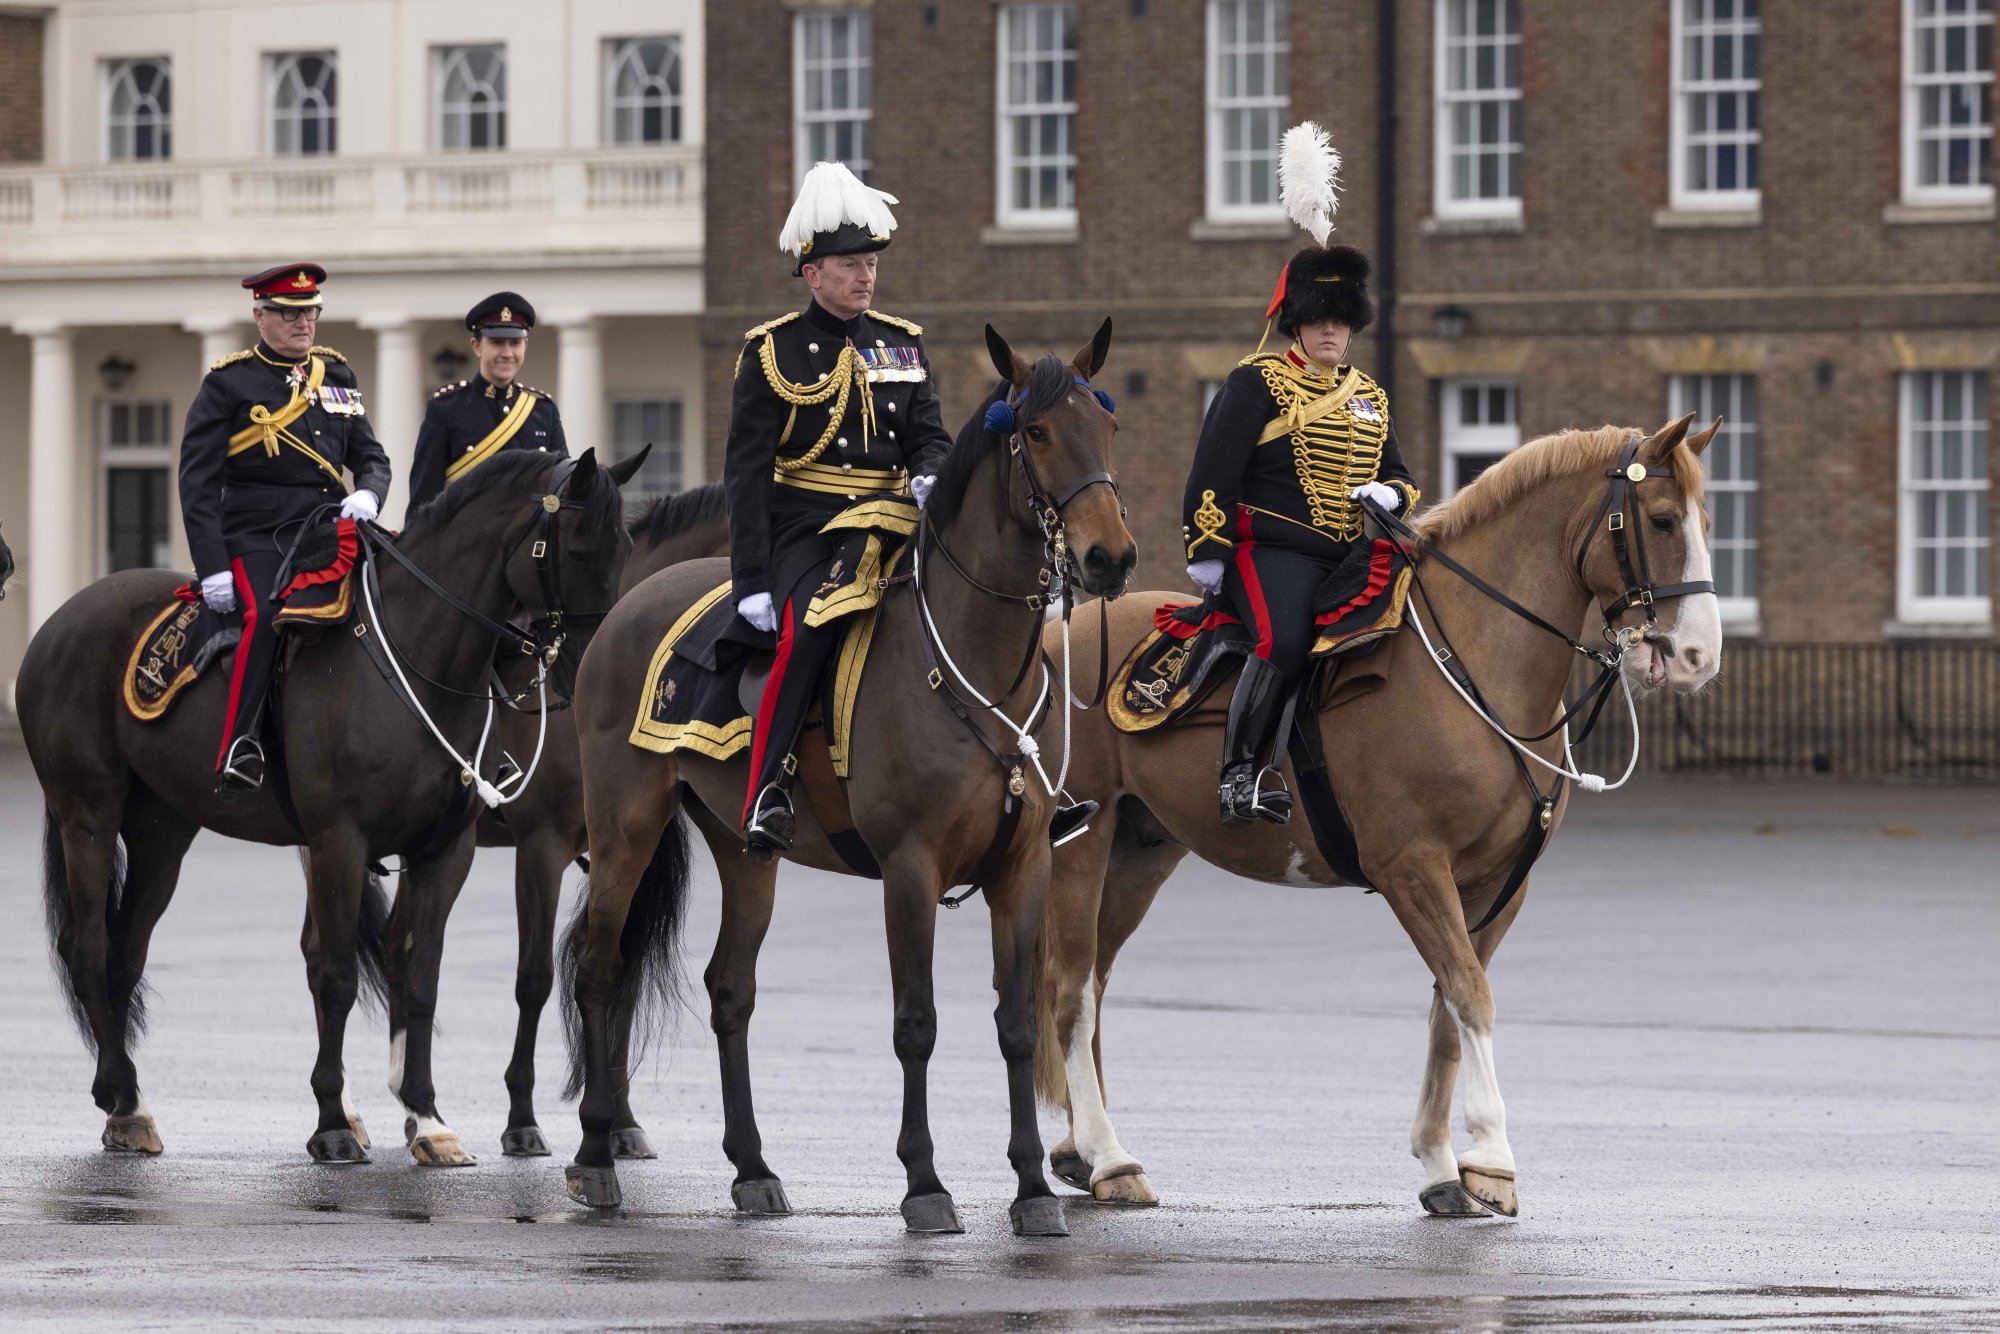 Μεγάλη Βρετανία: Η βασιλική οικογένεια ψάχνει υπάλληλο για να φροντίζει τα άλογα - Το «παράδοξο» με τον μισθό